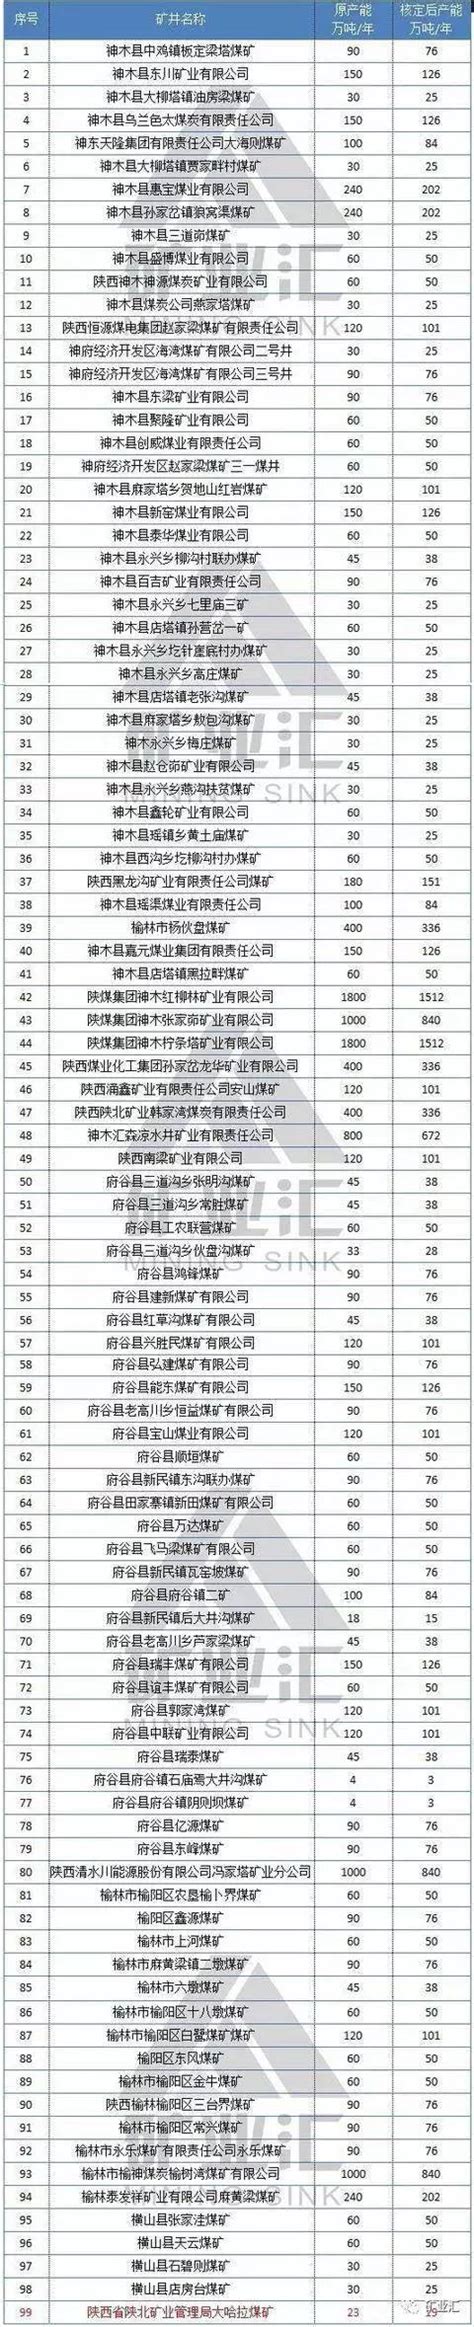 2017陕西省各地最新在产及关闭煤矿名单